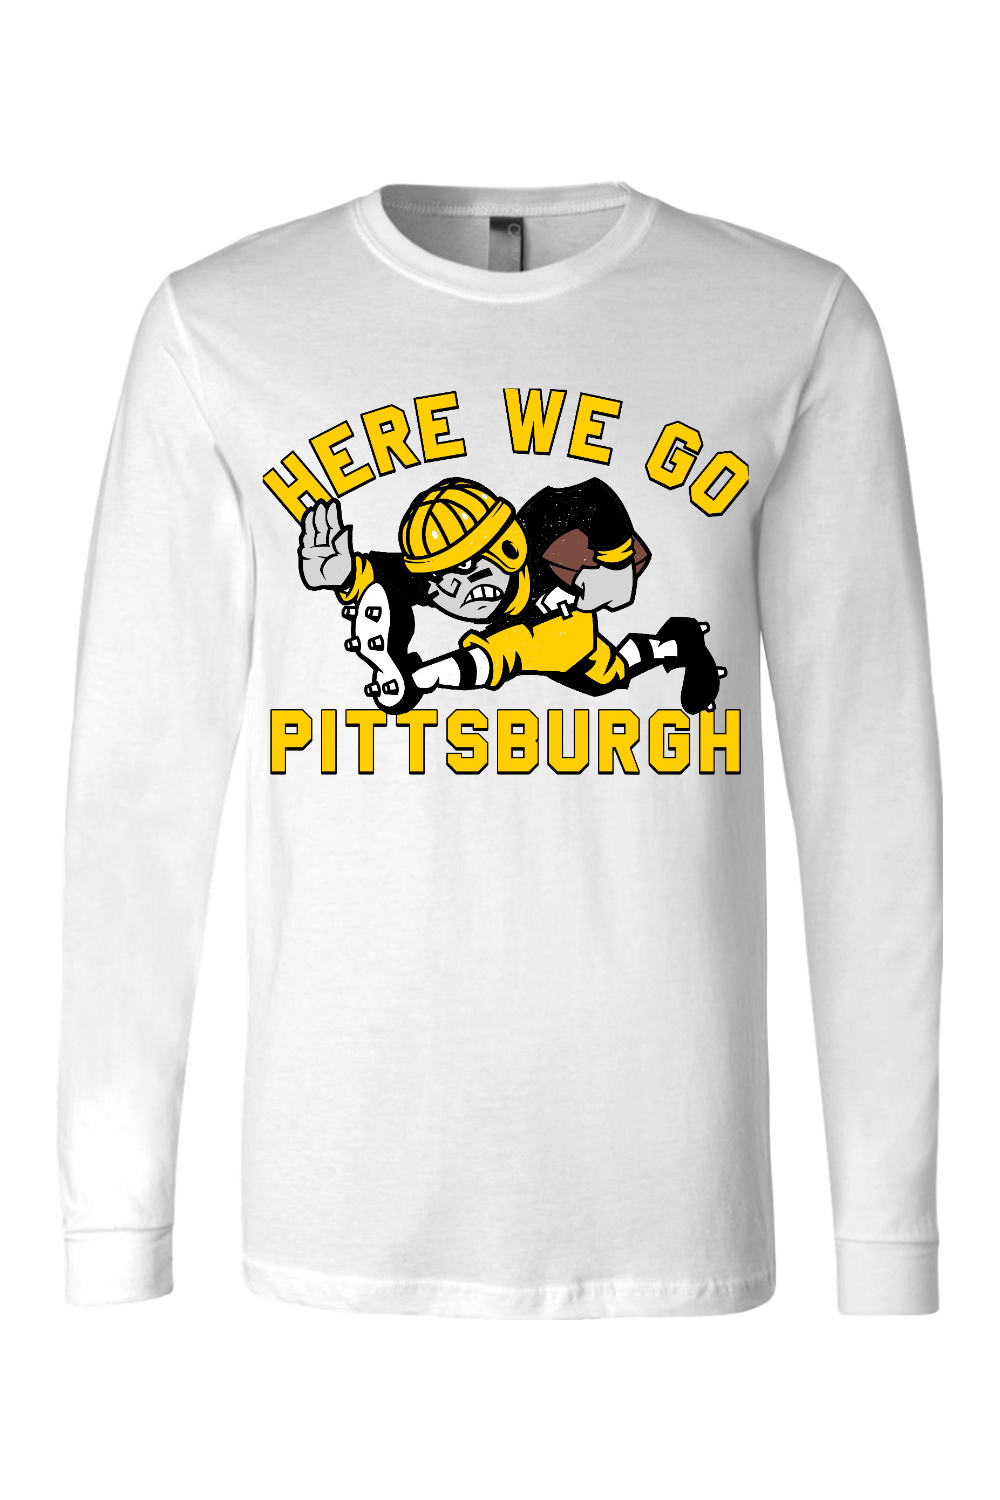 Here We Go Pittsburgh - Old School Football - Long Sleeve Tee - Yinzylvania